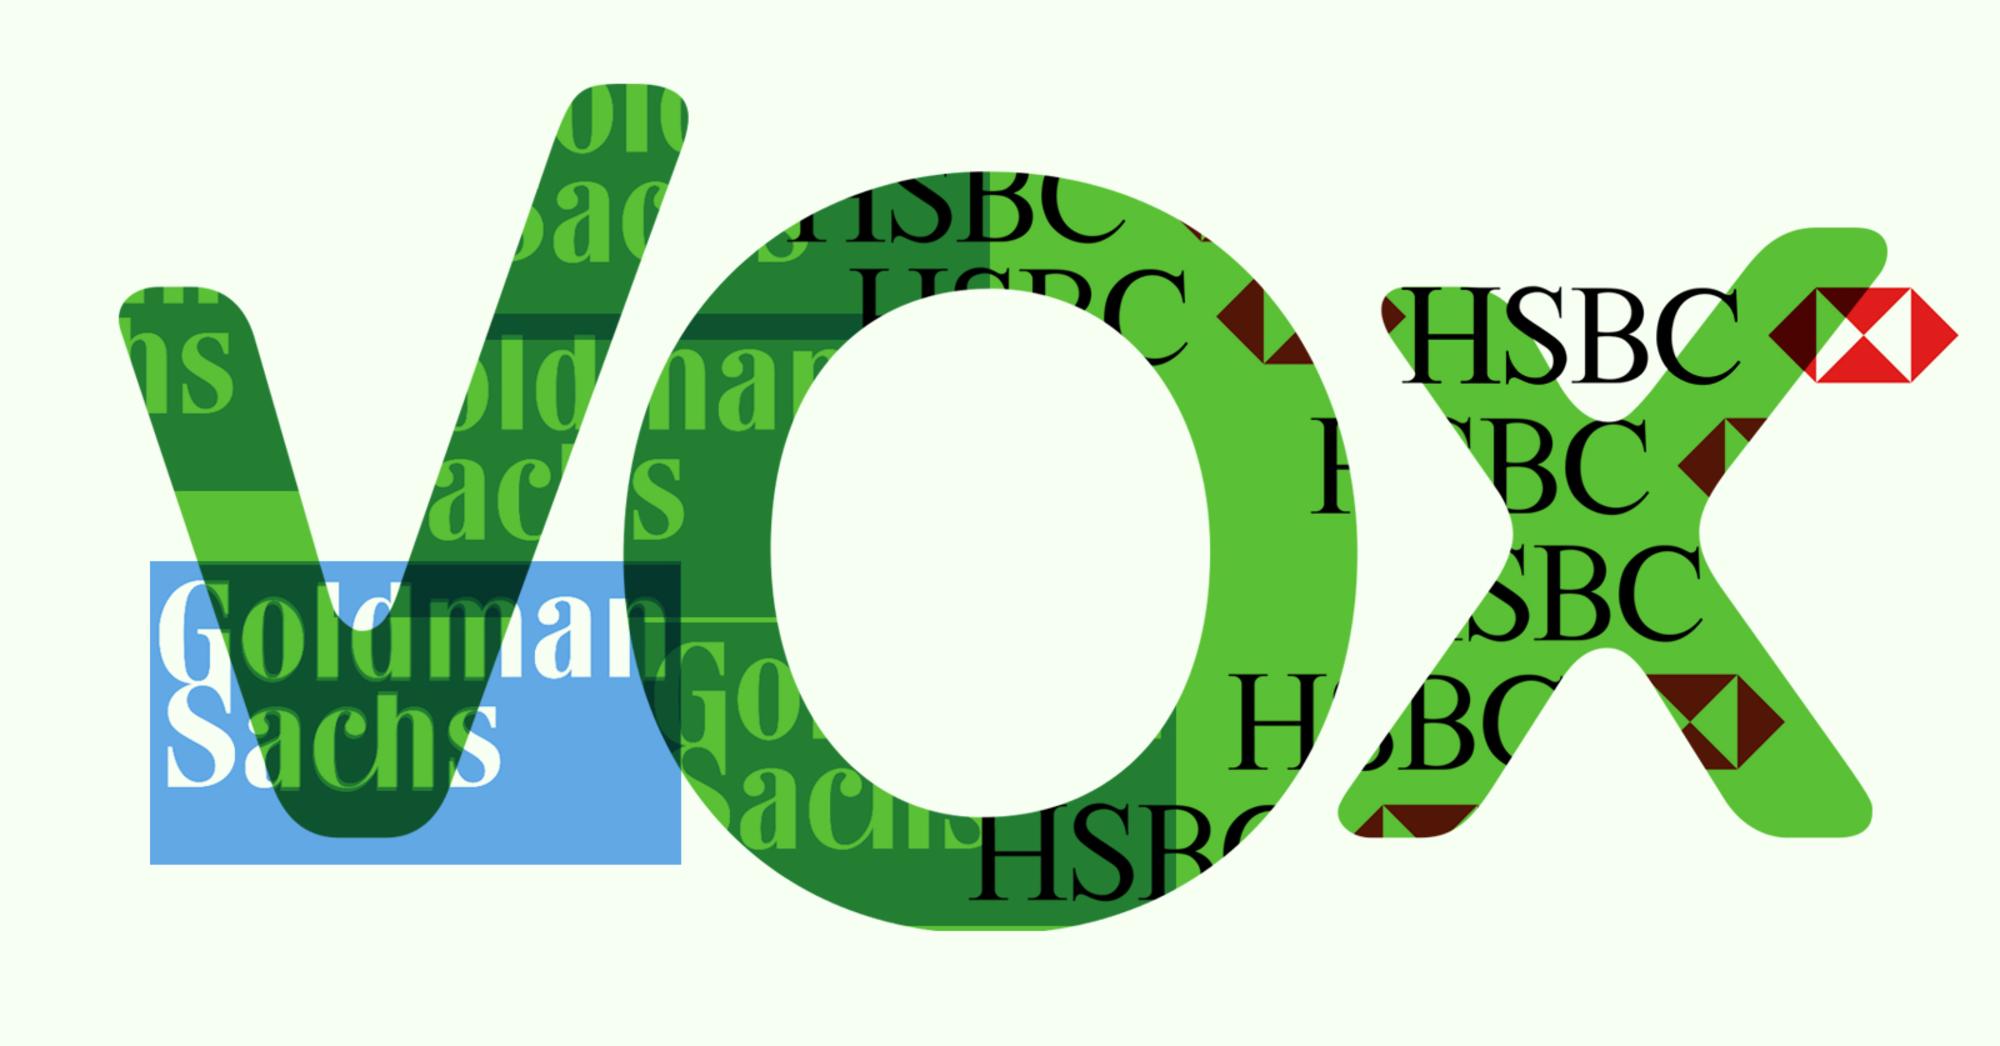 Vox Goldman Sachs Hsbc